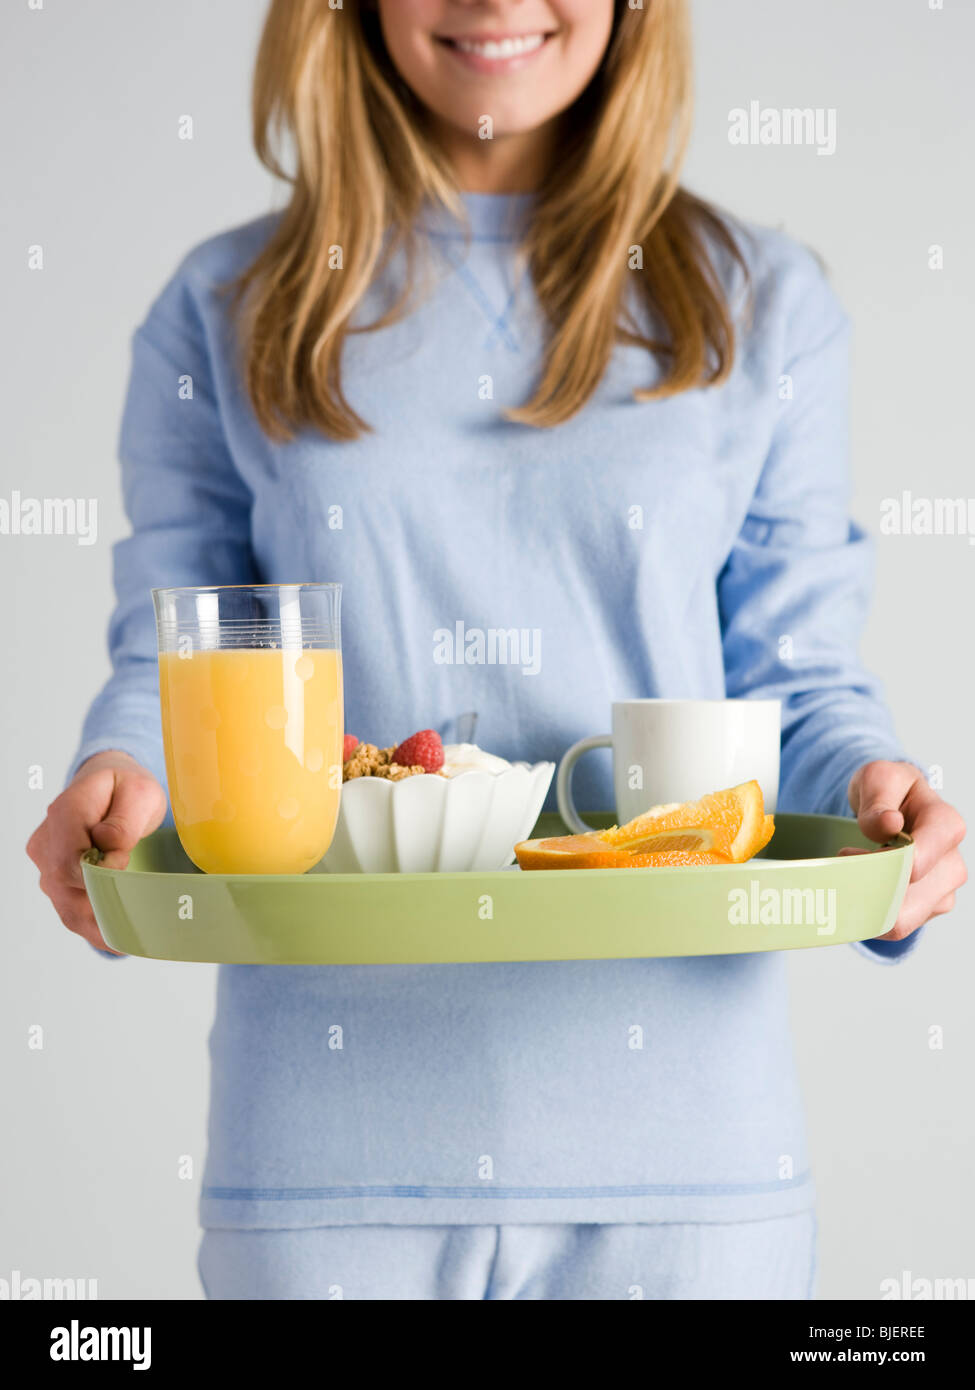 Mujer que llevaba el desayuno en una bandeja Foto de stock